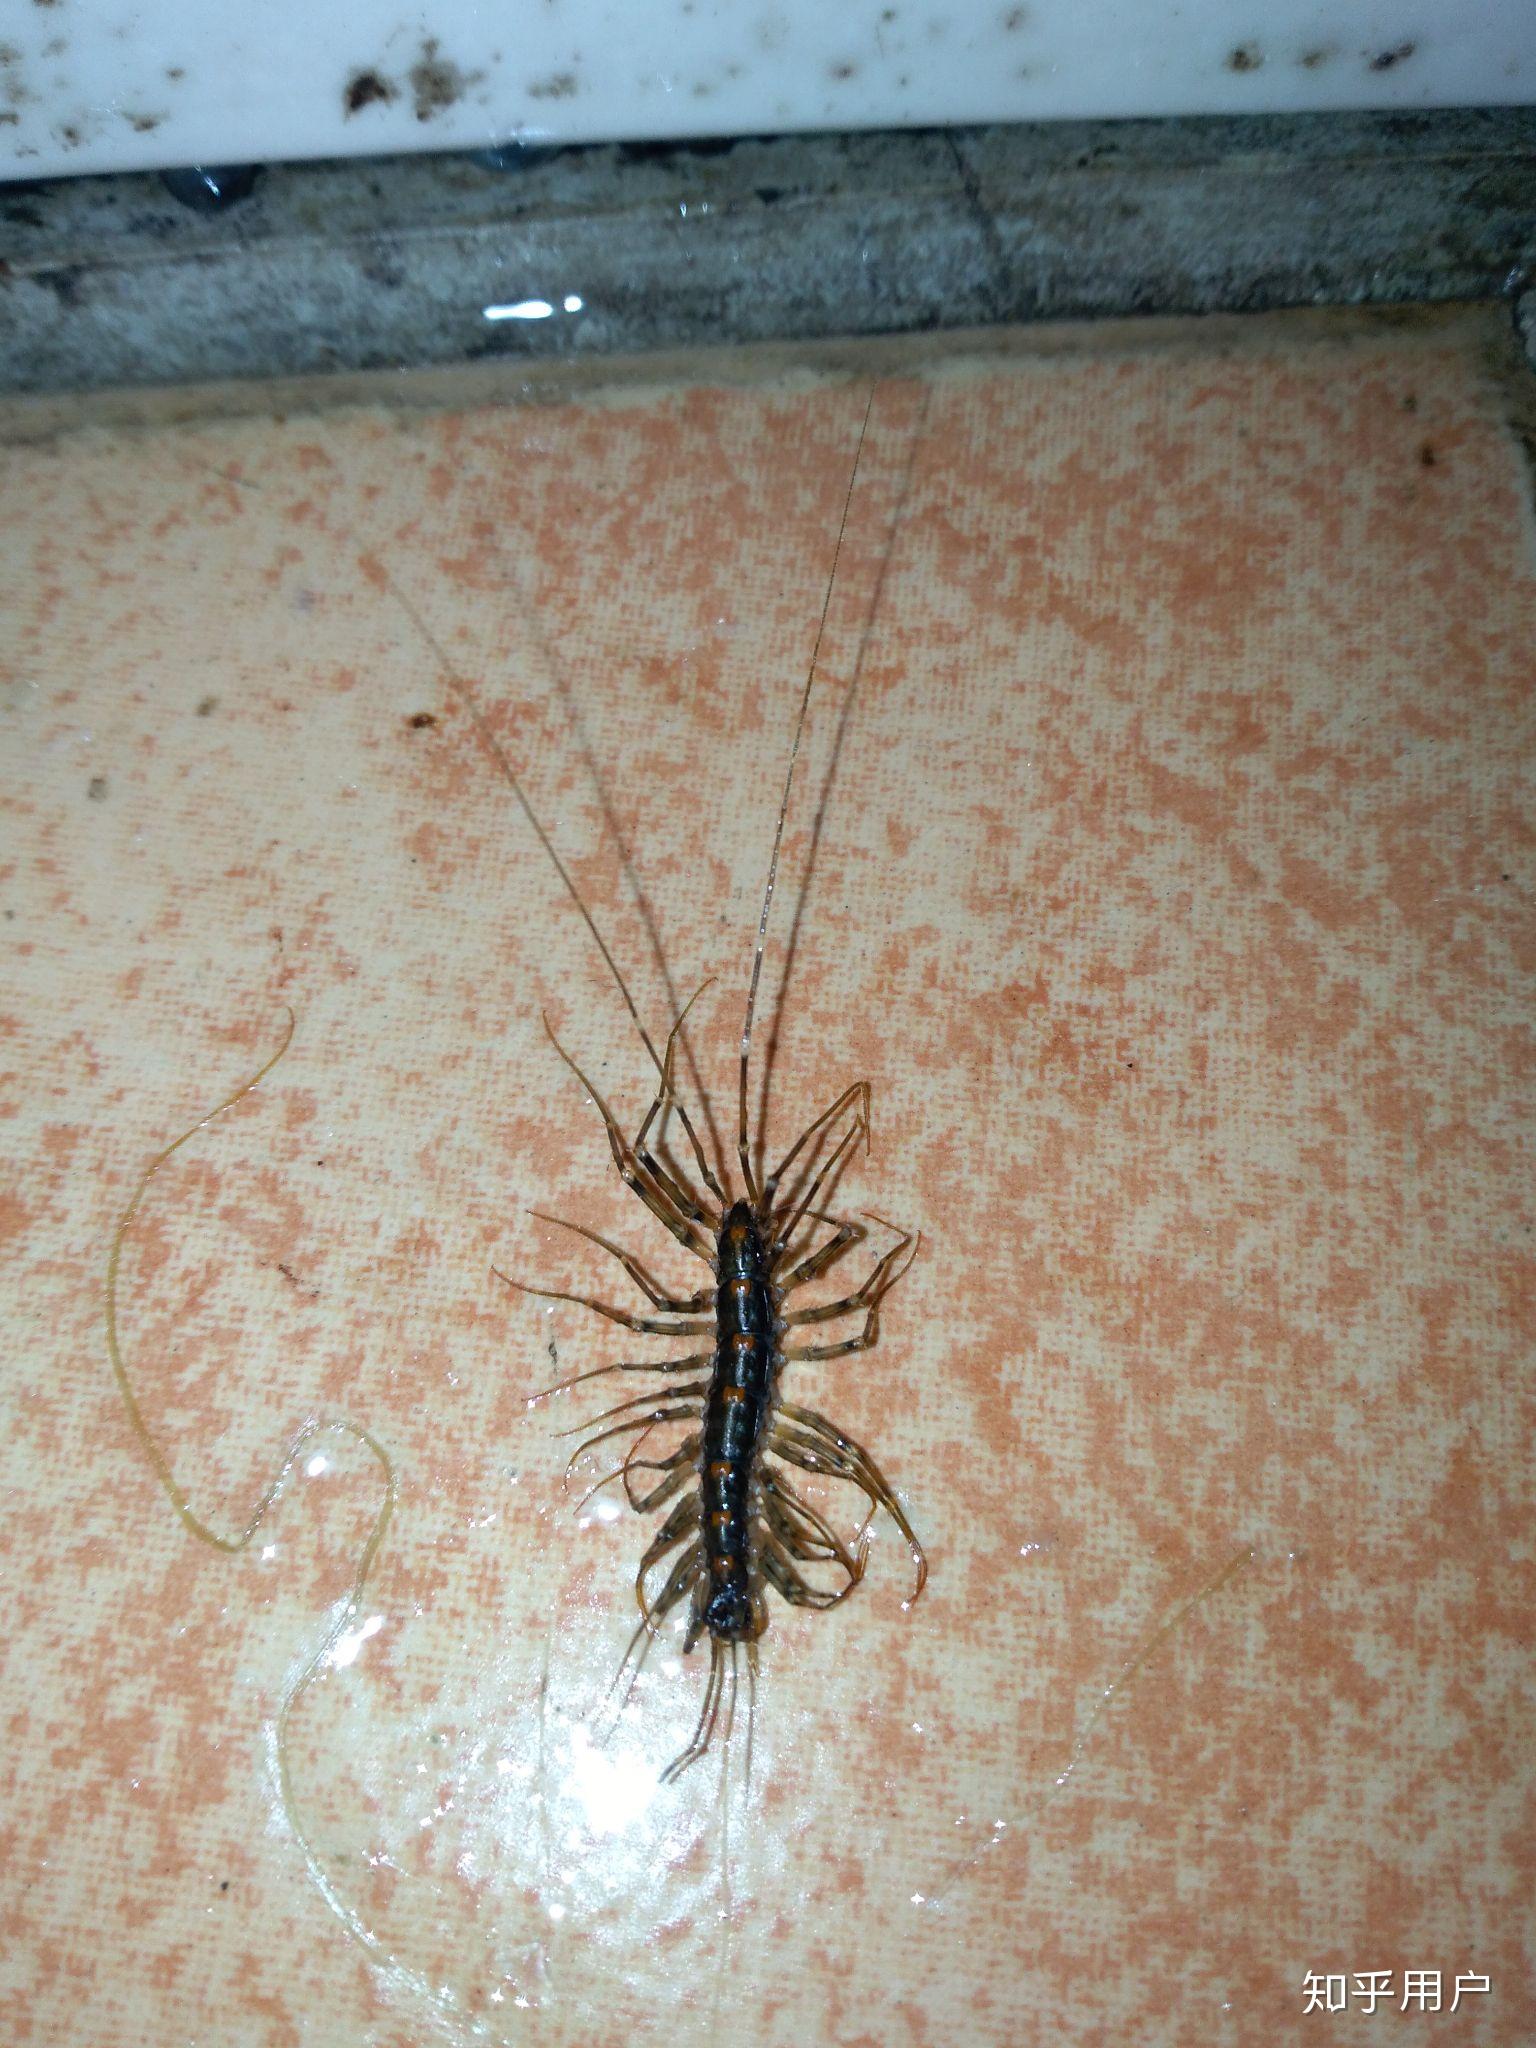 家里出现类似蜈蚣的多脚虫,请问是什么虫?如何预防呢? 